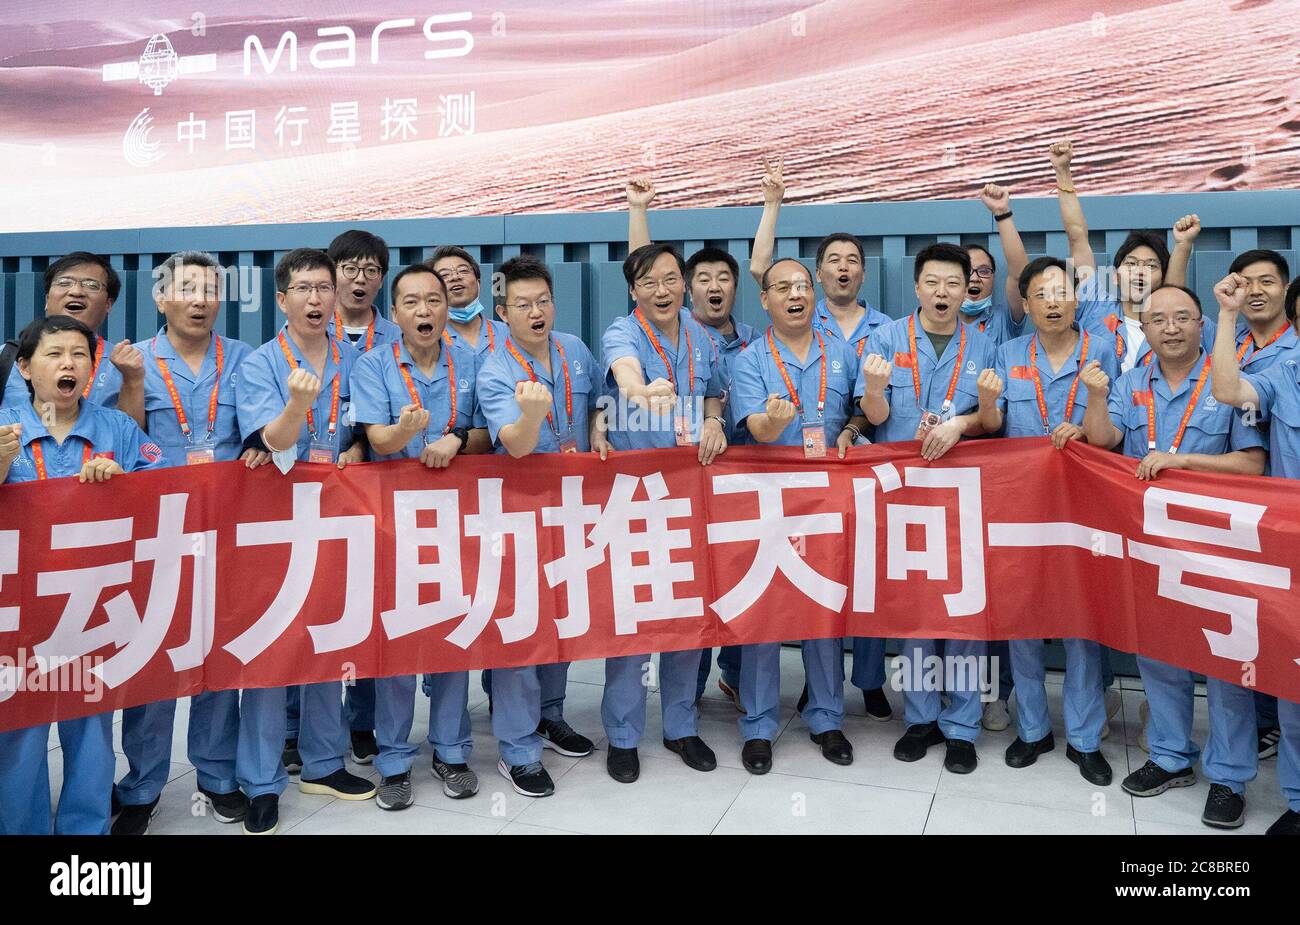 (200723) -- WENCANTG, 23 de julio de 2020 (Xinhua) -- investigadores celebran el lanzamiento exitoso de una sonda Mars en el sitio de lanzamiento de la nave espacial Wencantg en la provincia de Hainan, en el sur de China, el 23 de julio de 2020. China lanzó una sonda de Marte el jueves, diseñada para completar la órbita, el aterrizaje y el viaje en una misión, dando el primer paso en su exploración planetaria del sistema solar. Crédito: Xinhua/Alamy Live News Foto de stock